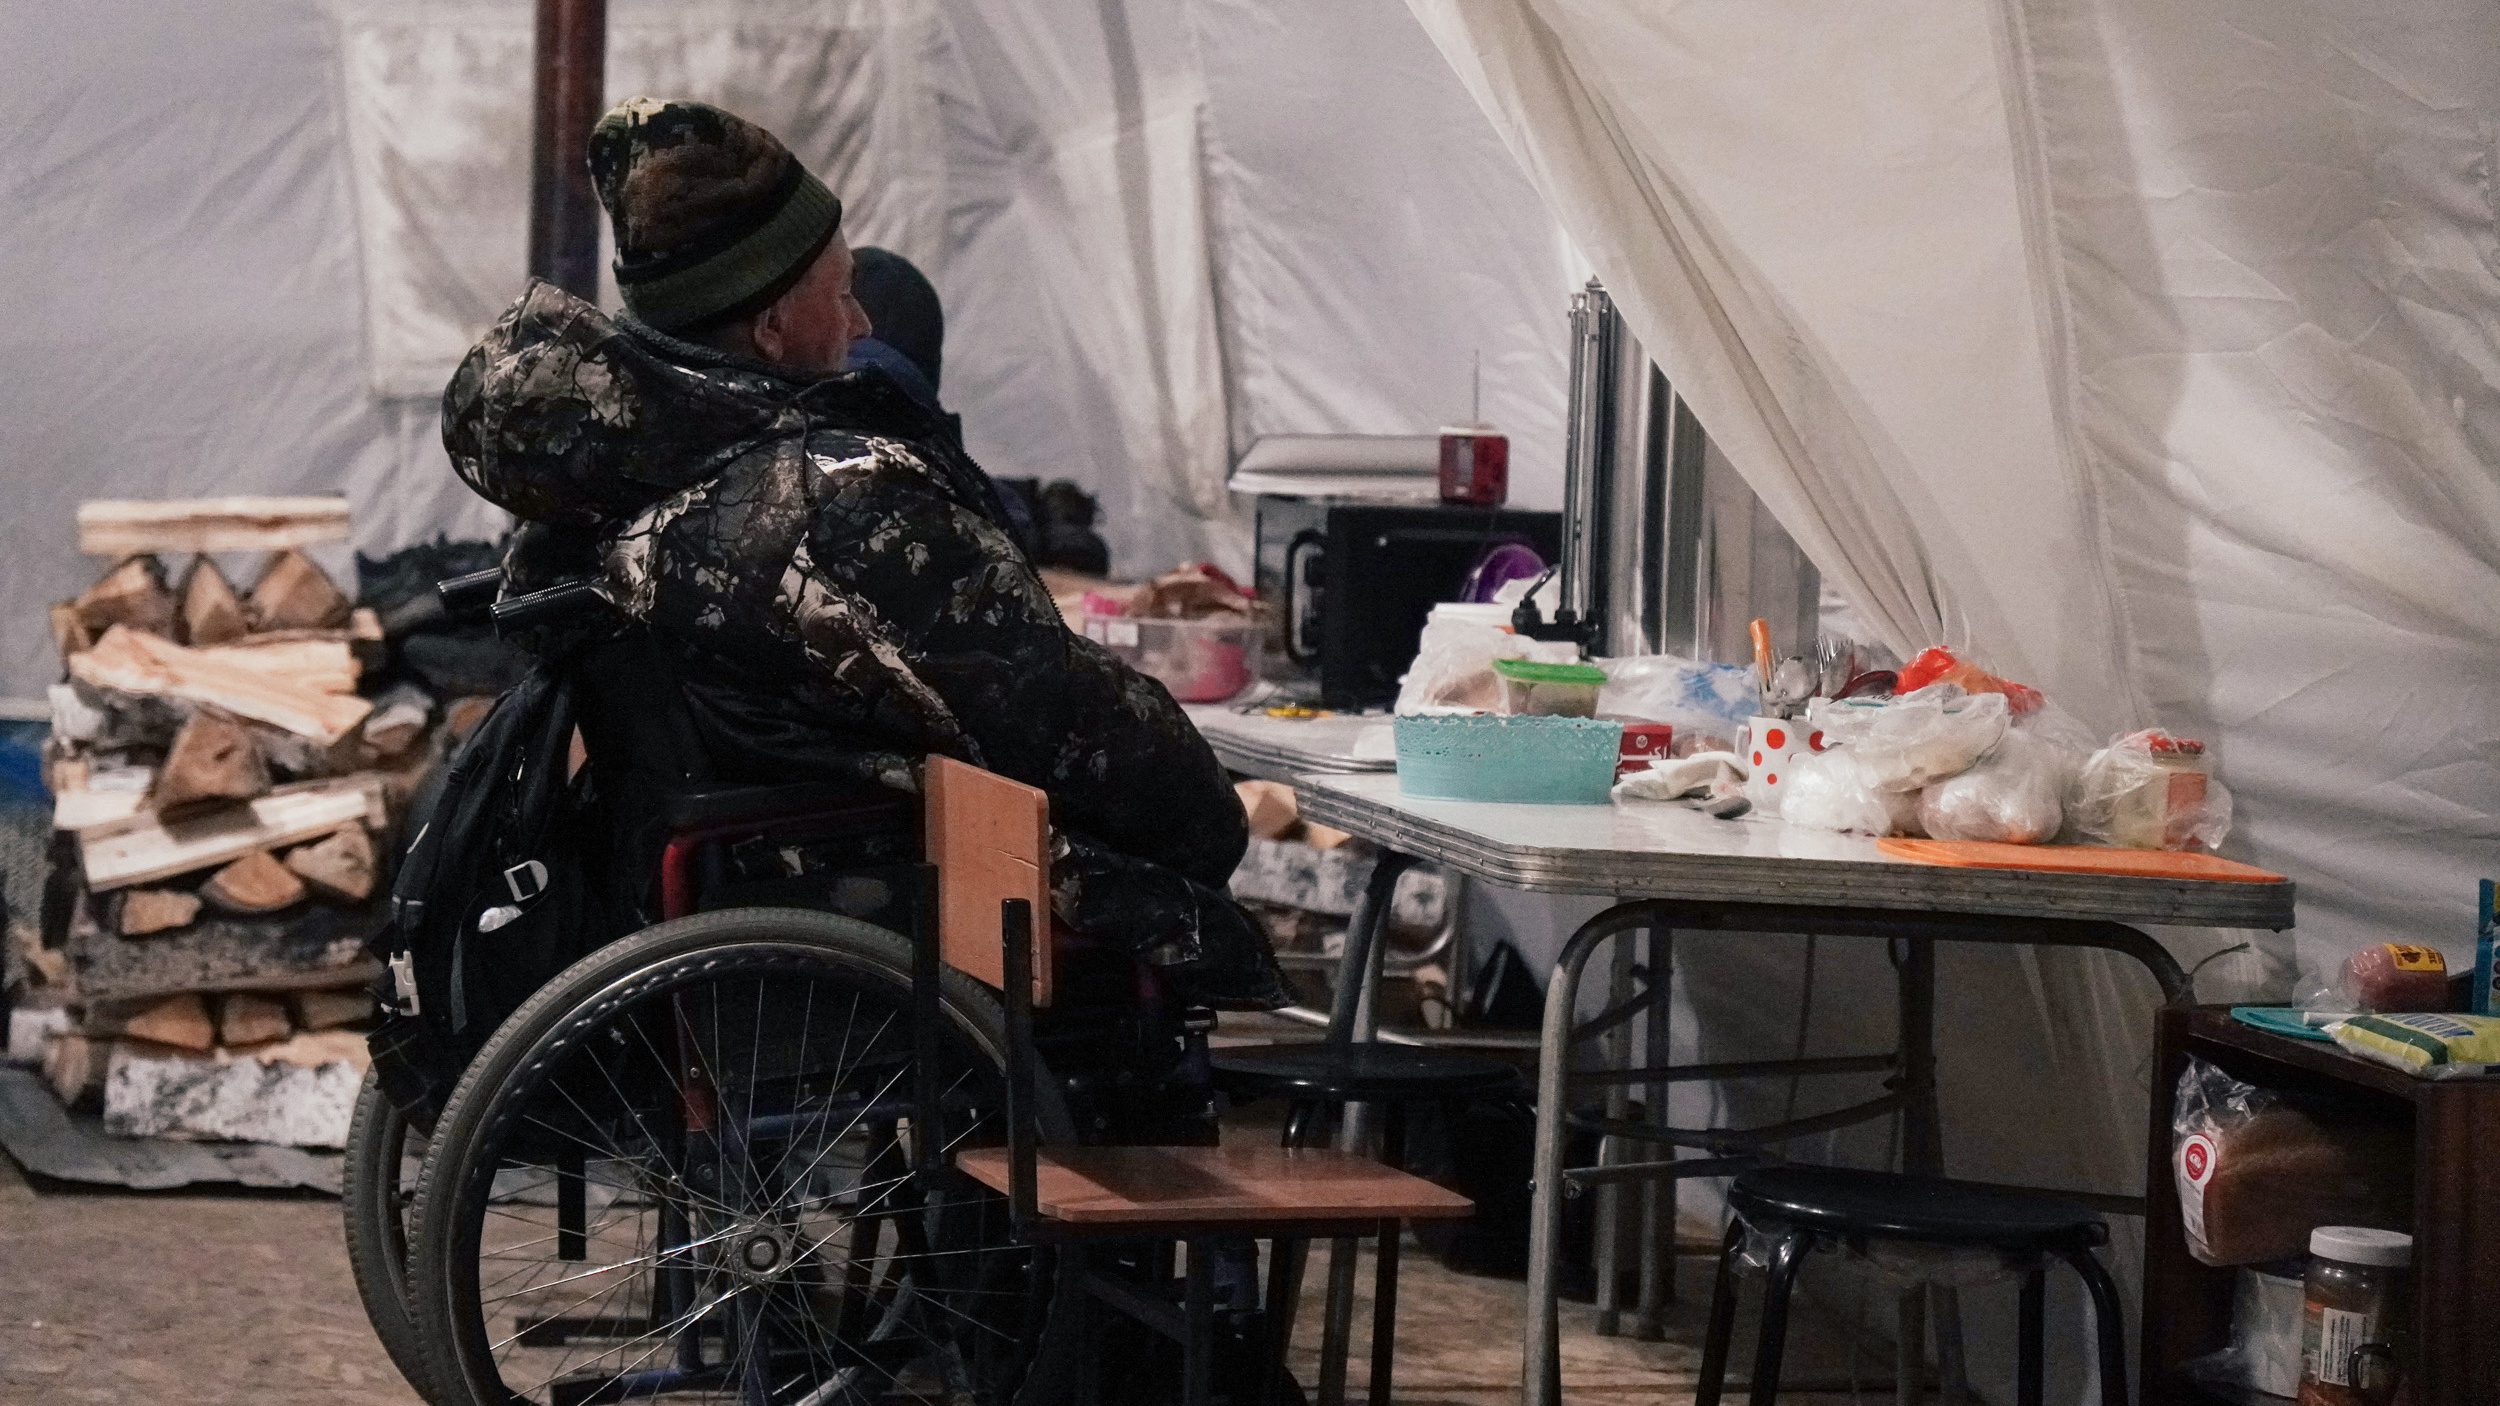 «Я людям вообще не верю»: как обогревают бездомных в палатке на краю Омска